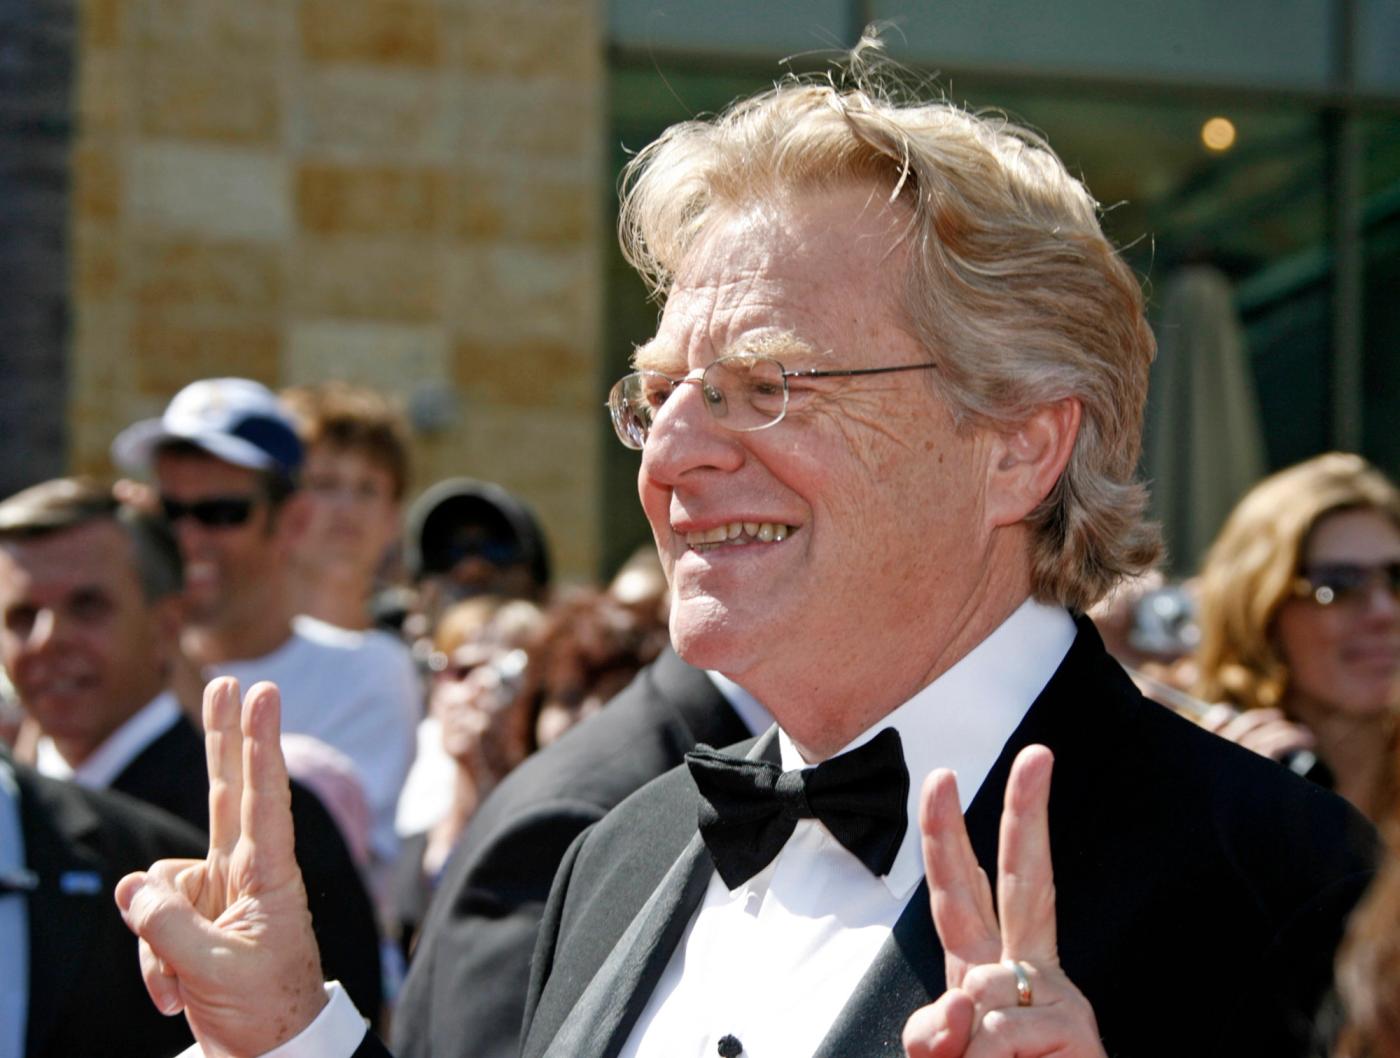 Springer at the 2007 Emmys.